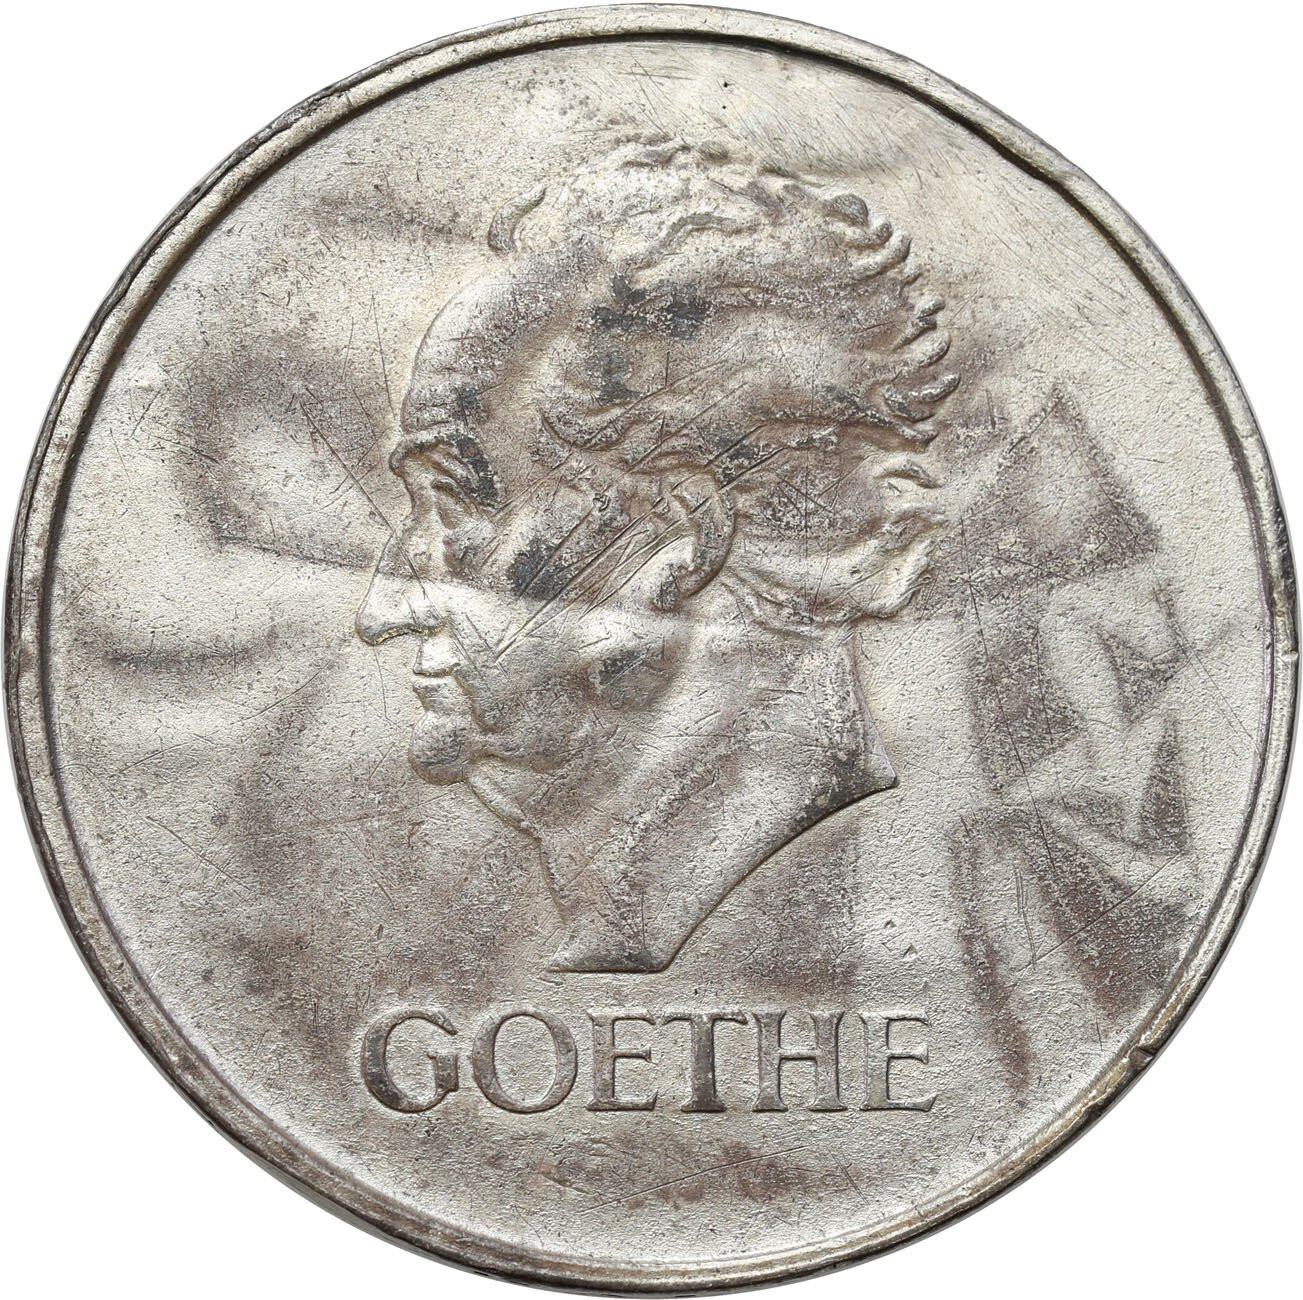 Niemcy, Weimar. 3 marki 1932 J, Goethe